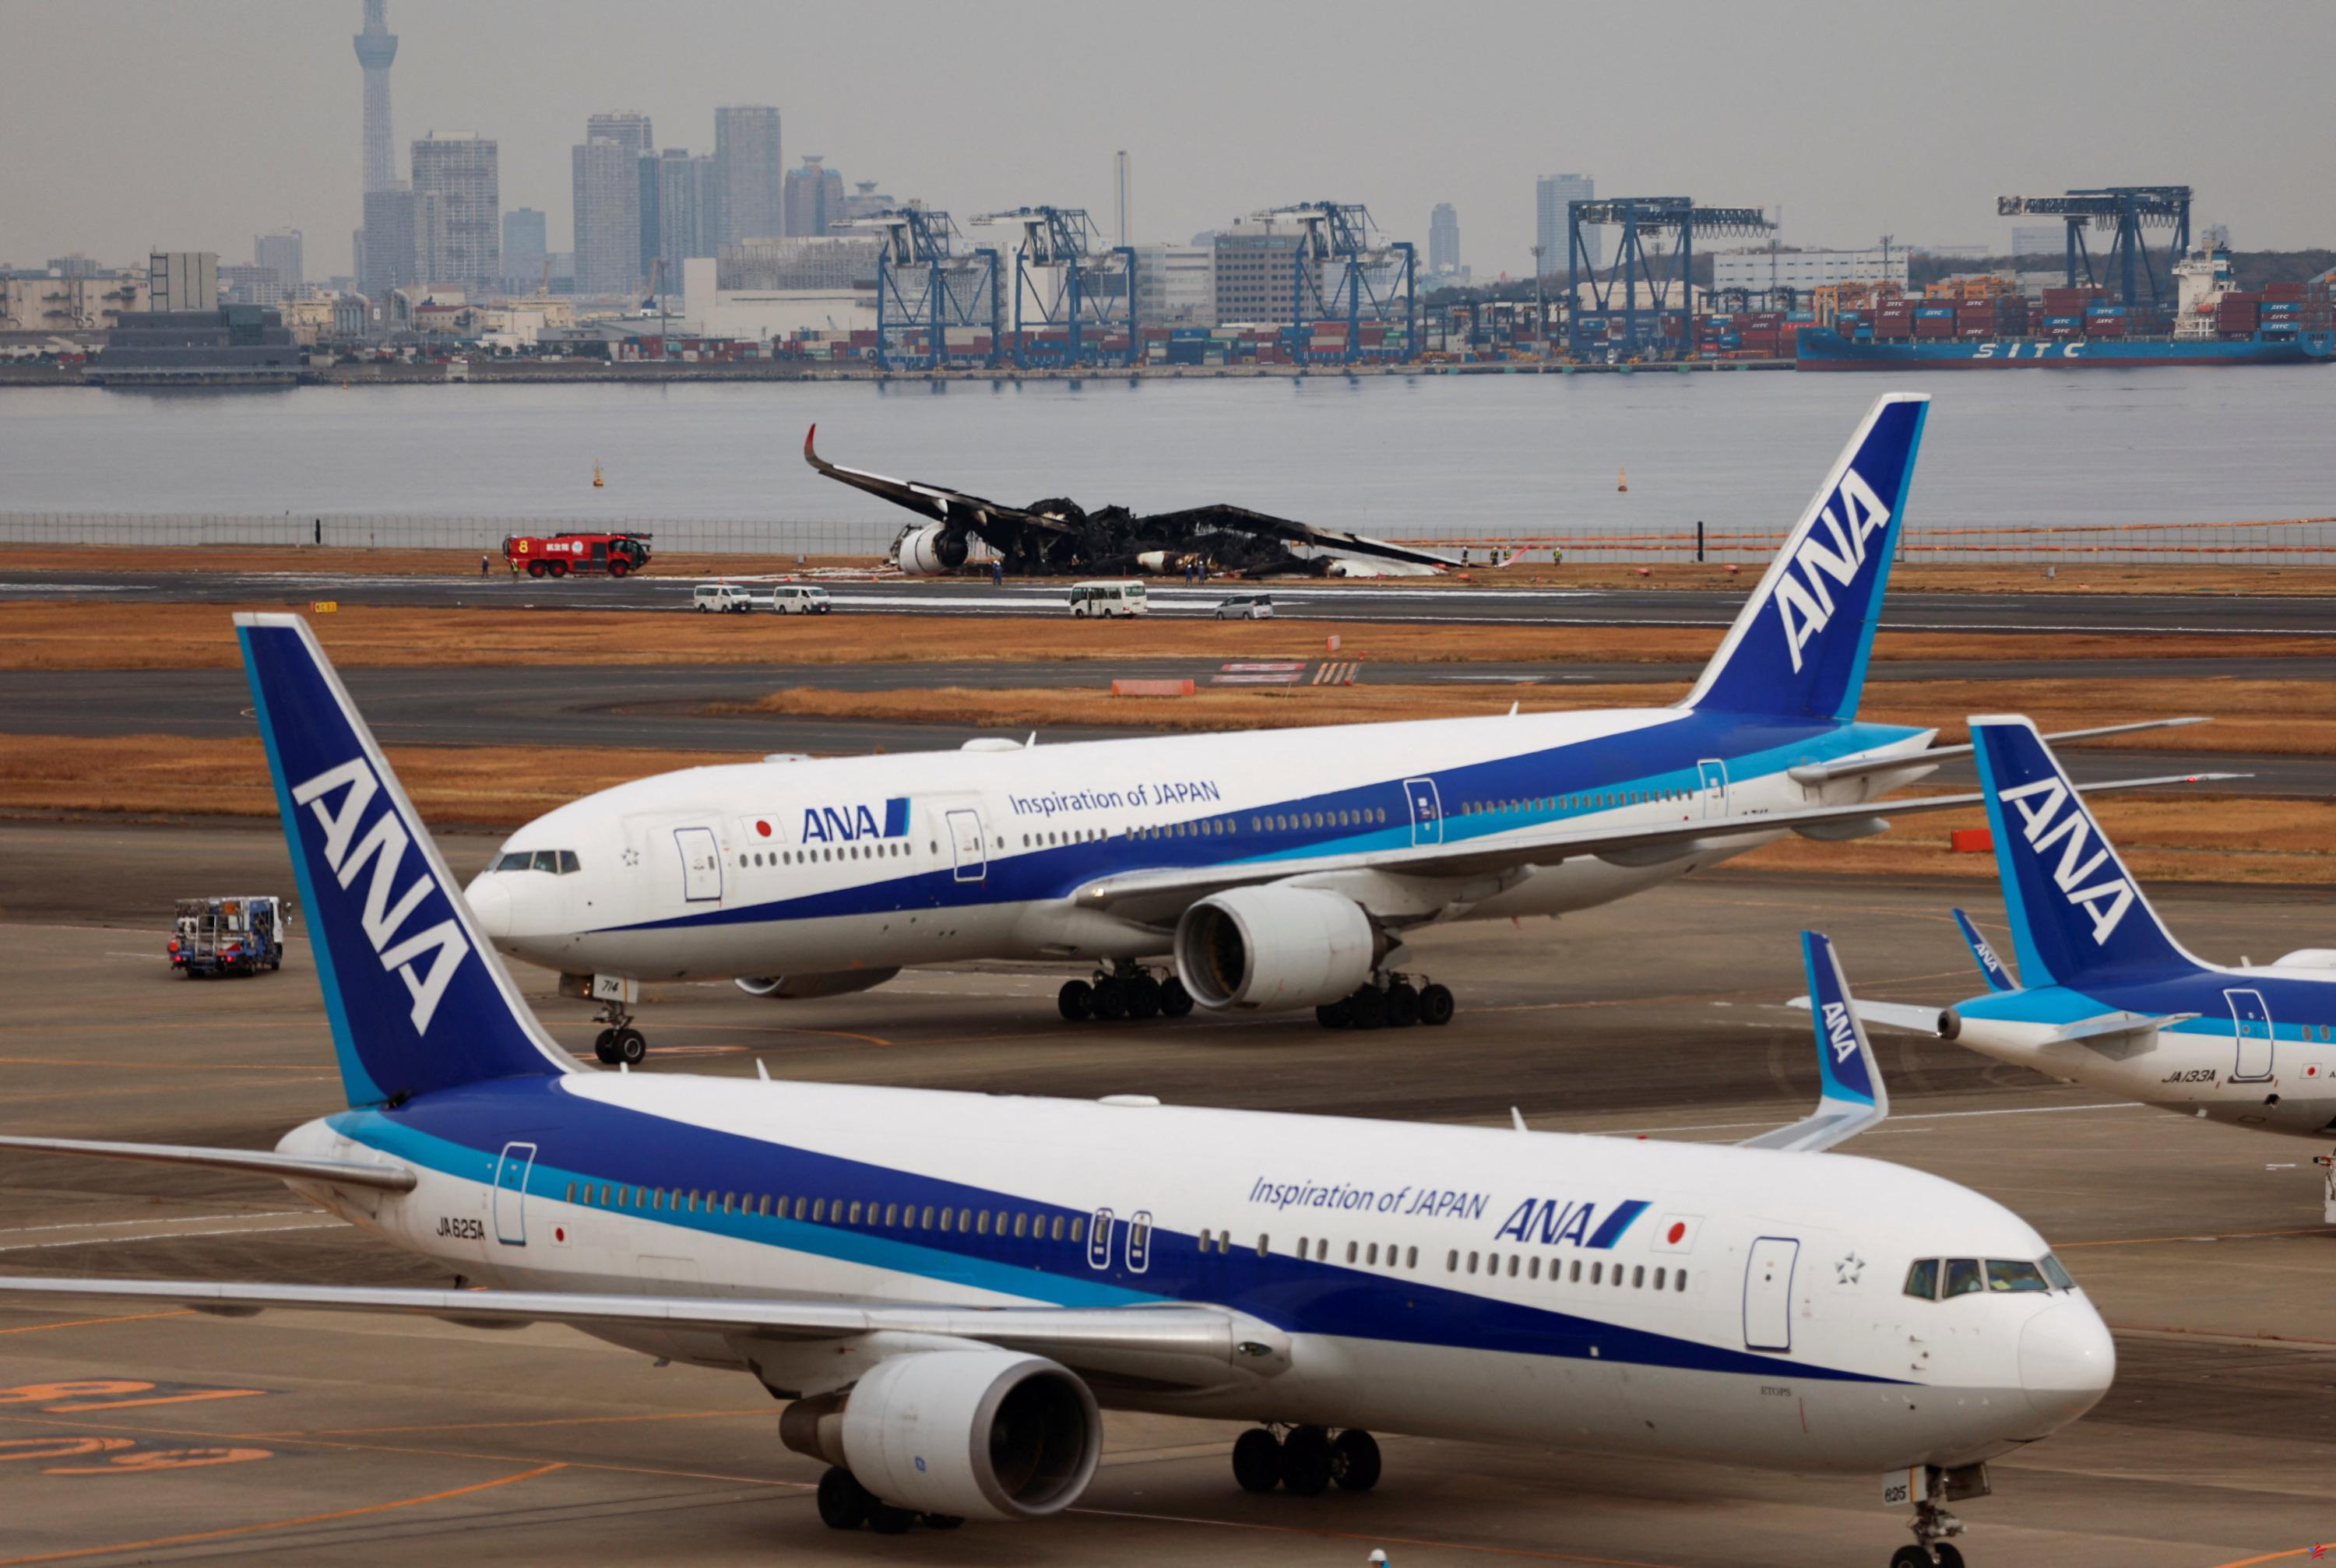 Colisión en el aeropuerto de Tokio: los pilotos no vieron al otro avión en tierra